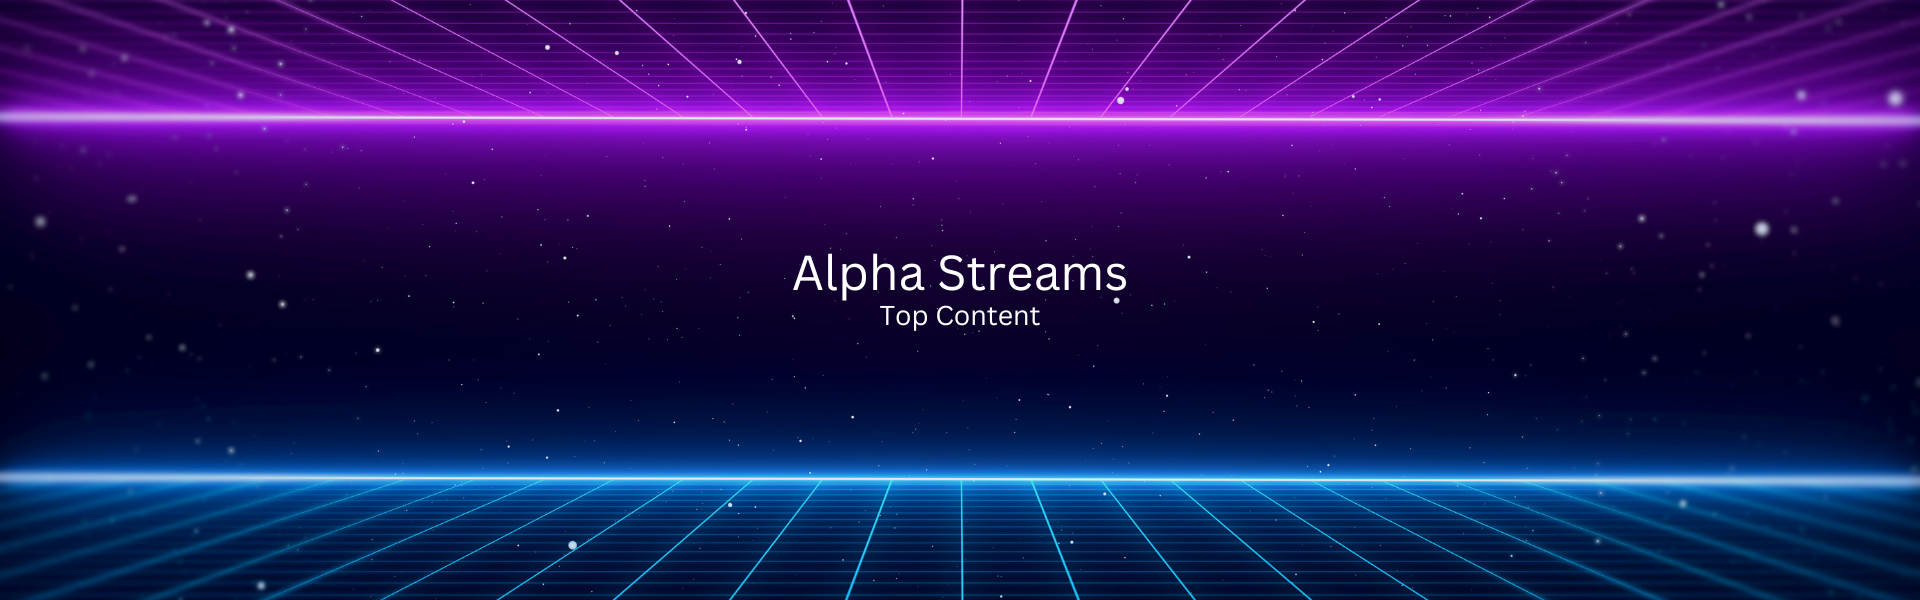 alpha streams header hd